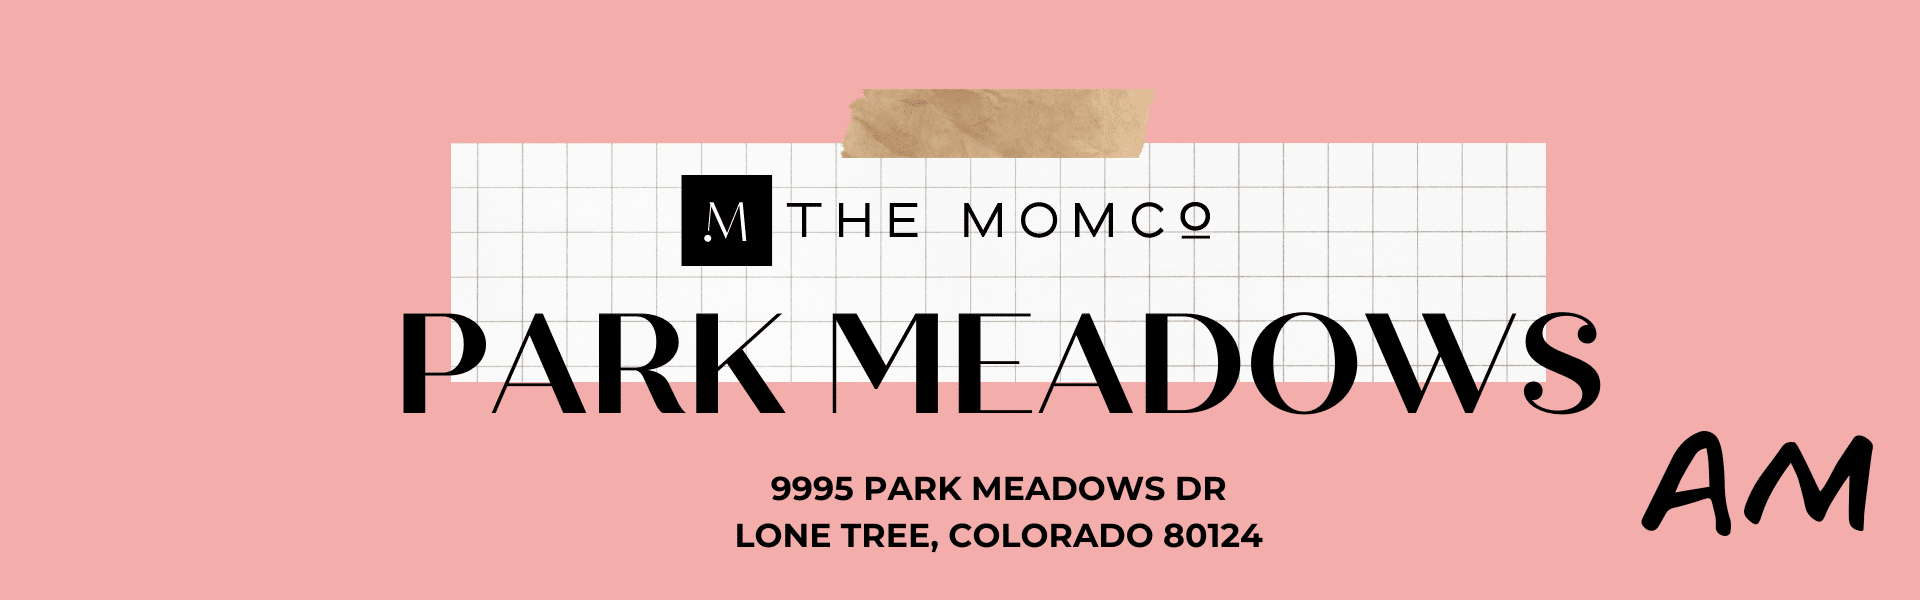 Park Meadows AM MOMCO